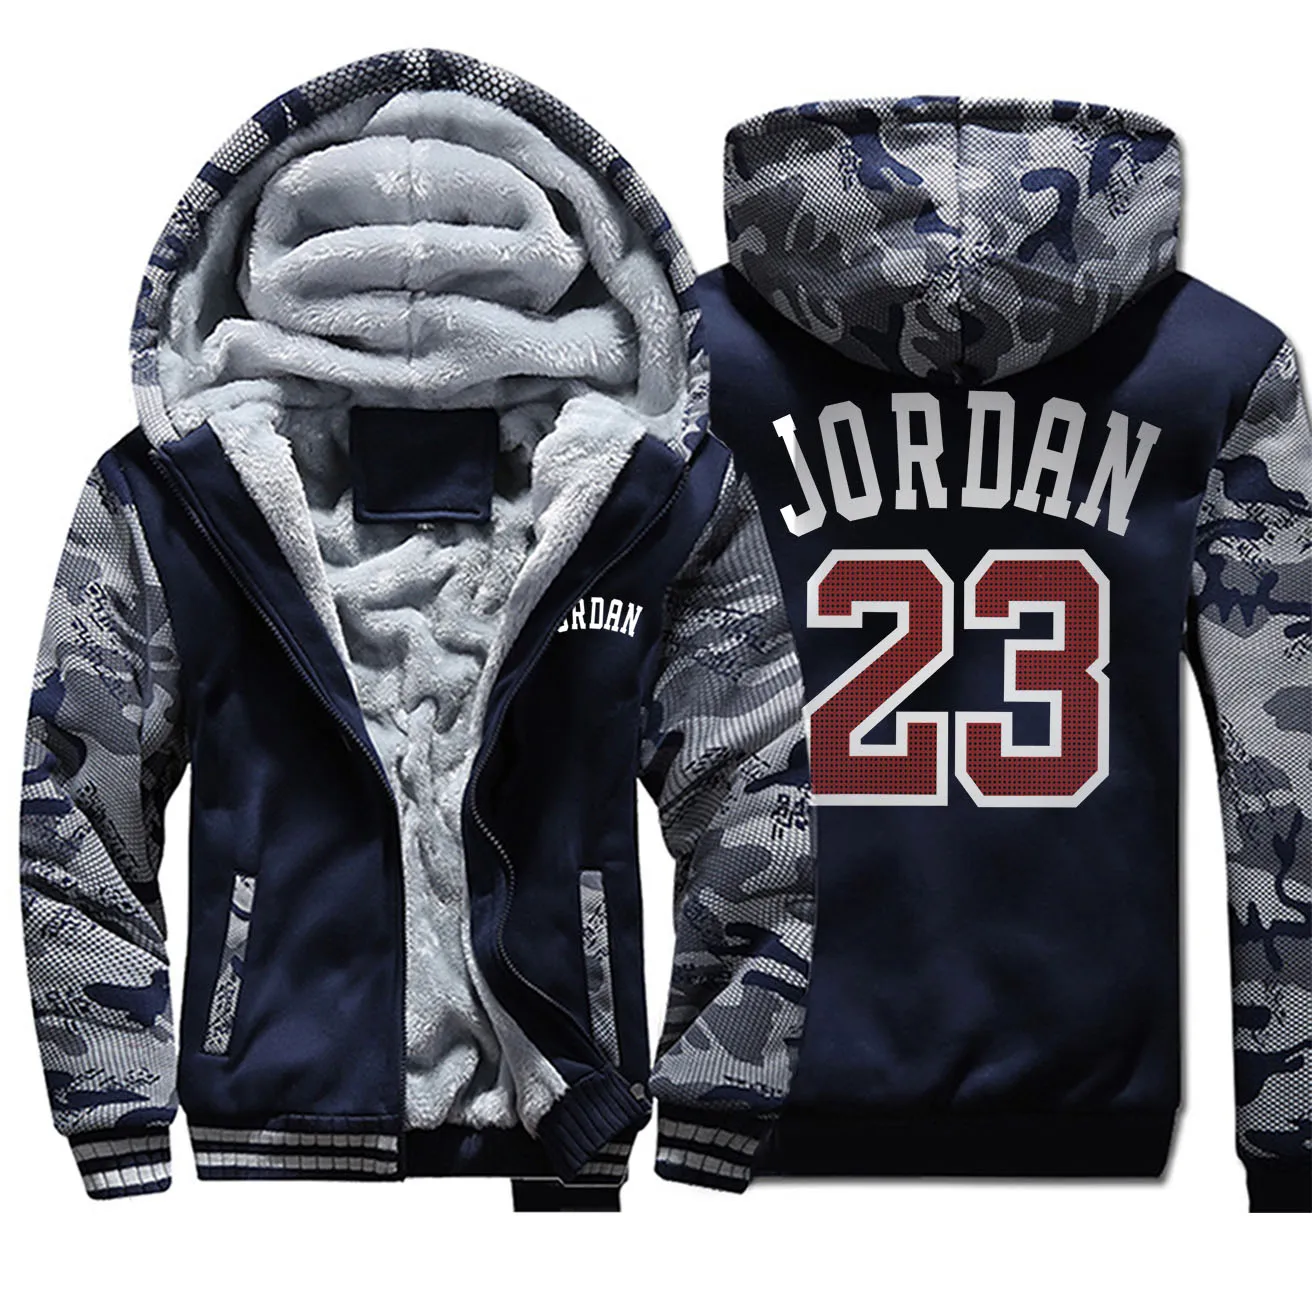 Jordan 23 мужские толстовки с буквенным принтом зимние утепленные мужские куртки камуфляжные пальто с рукавами стильная популярная верхняя мужская спортивная одежда - Цвет: Dark Blue 6